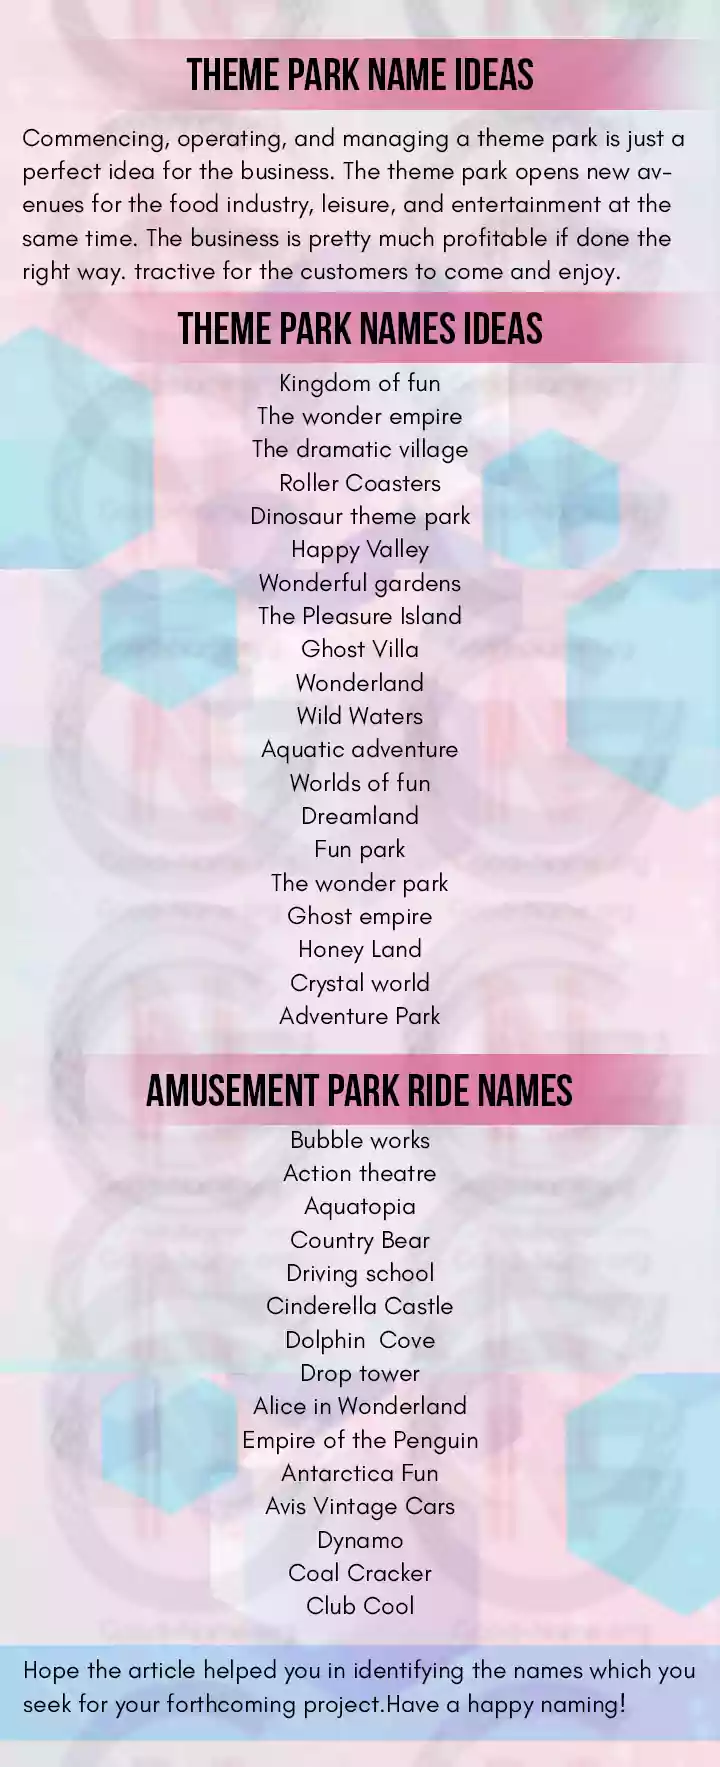 Theme Park Name Ideas